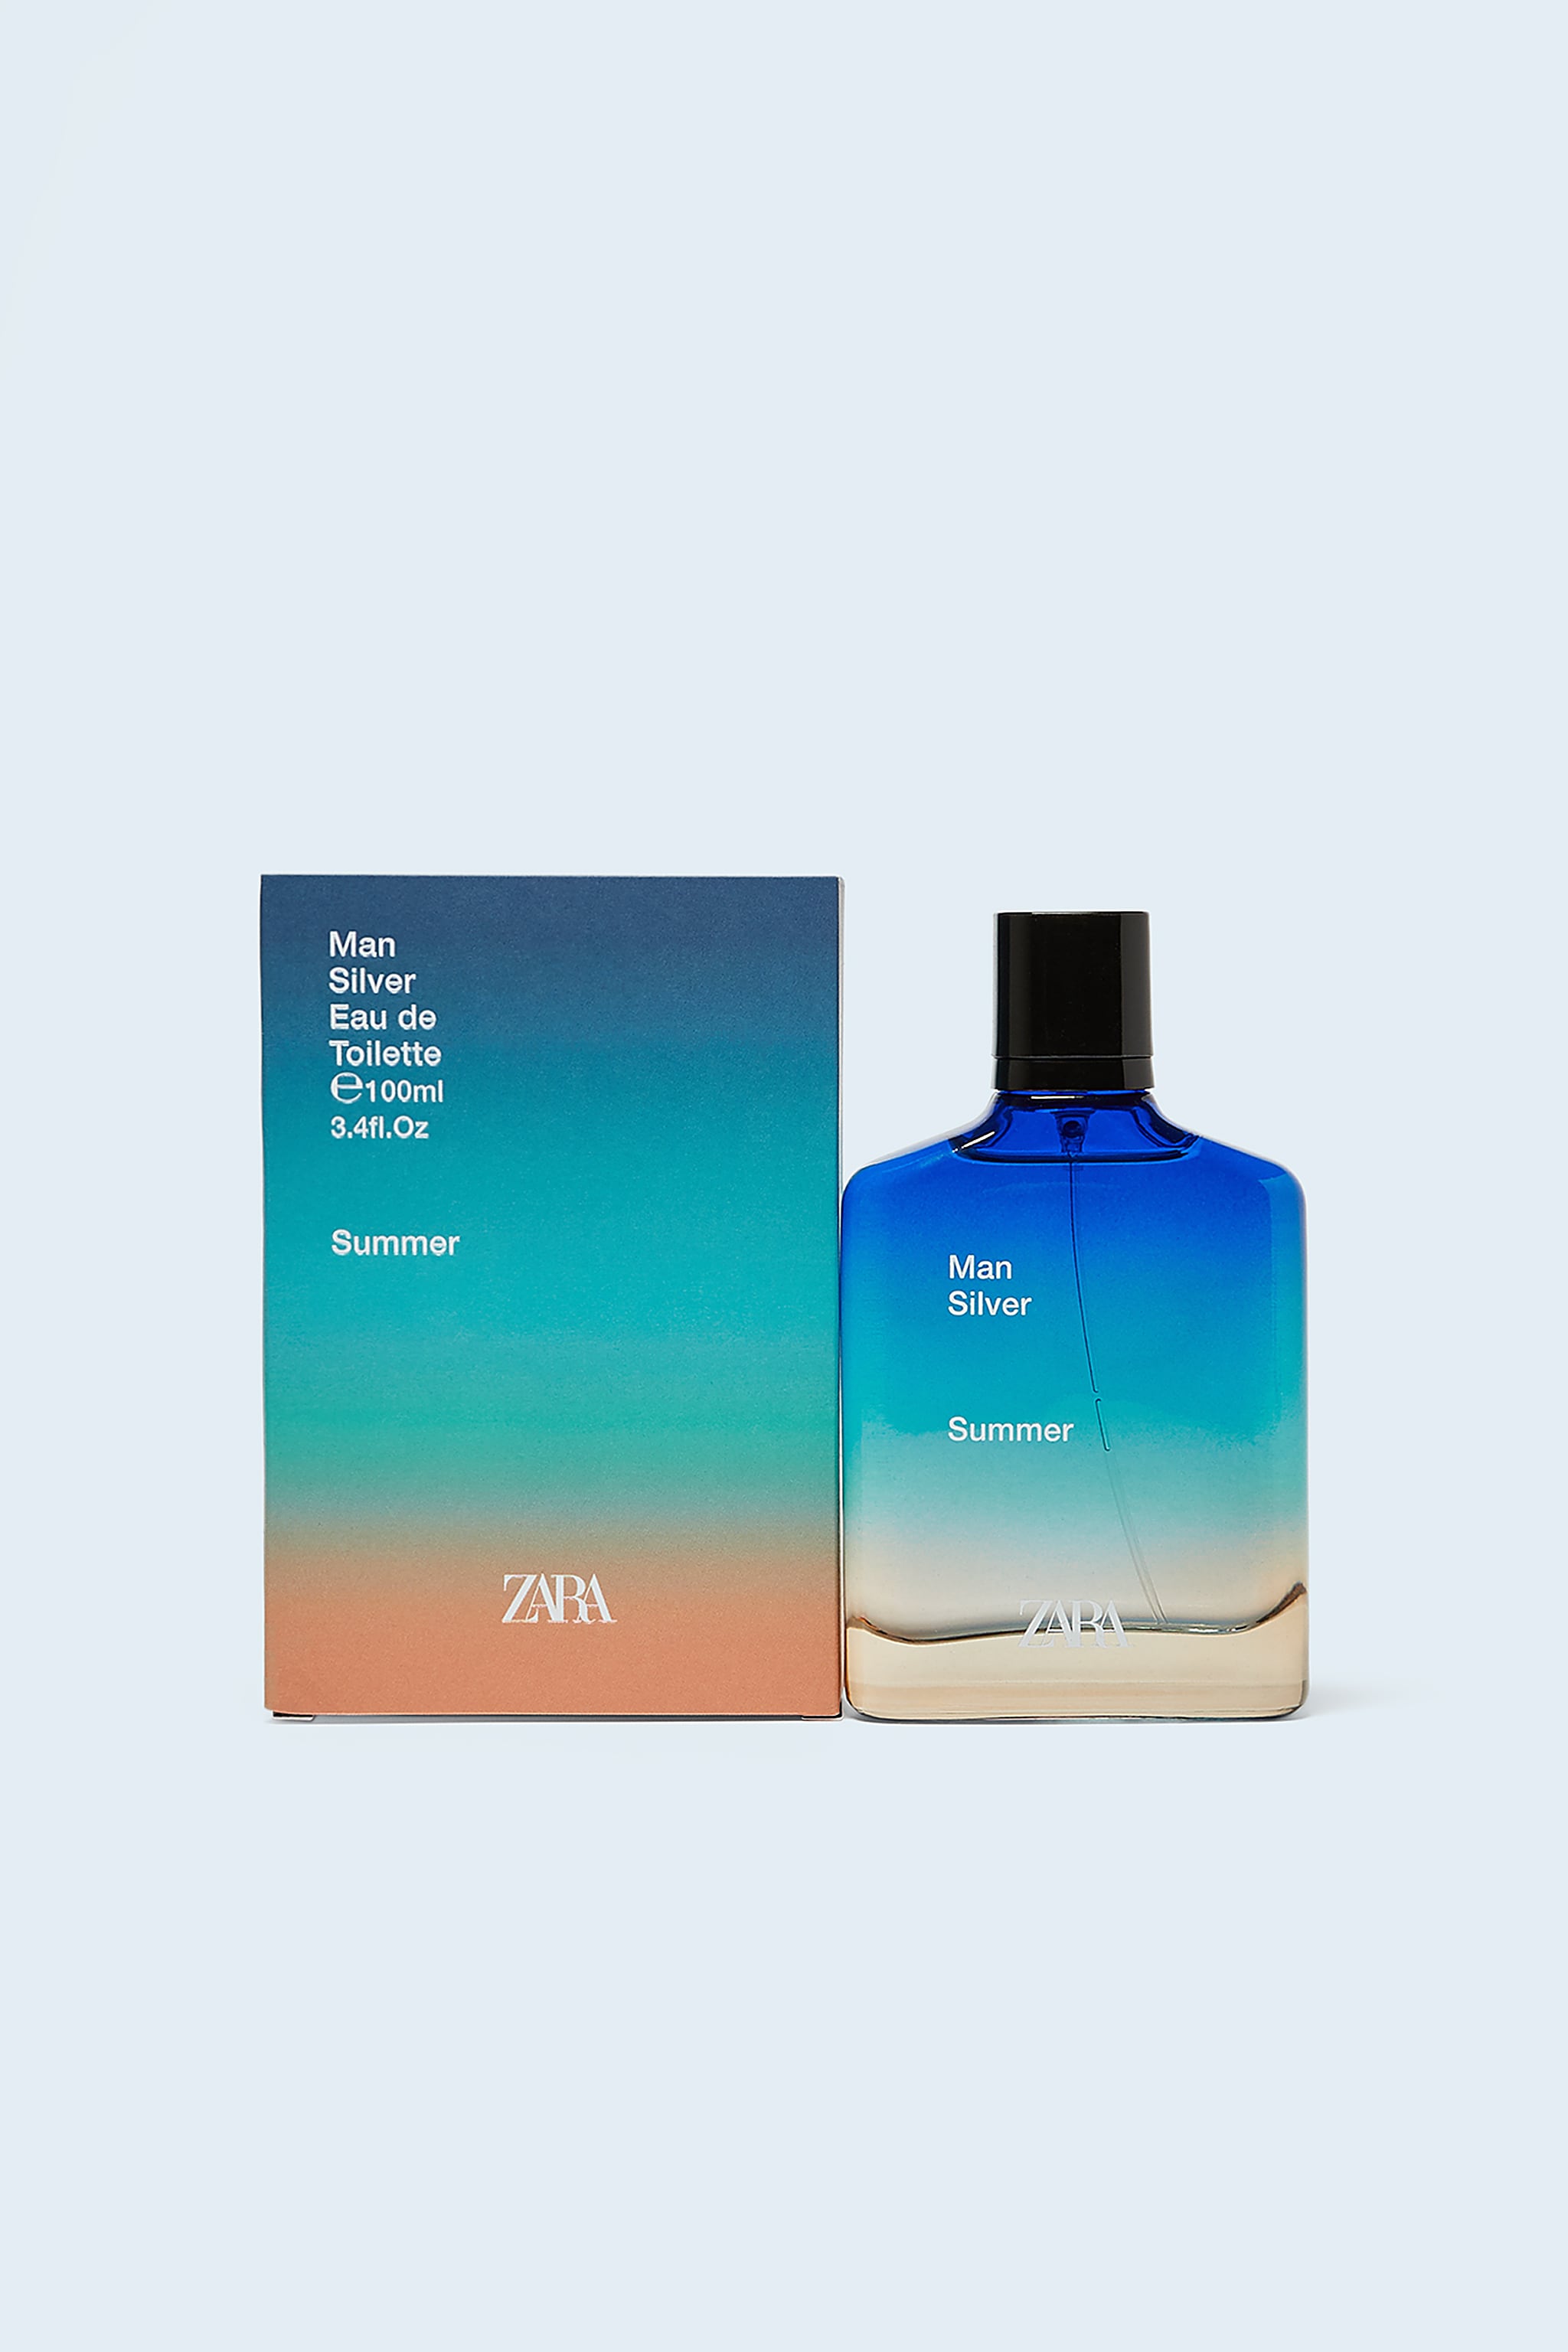 Parfum Zara Man Silver Summer 2020